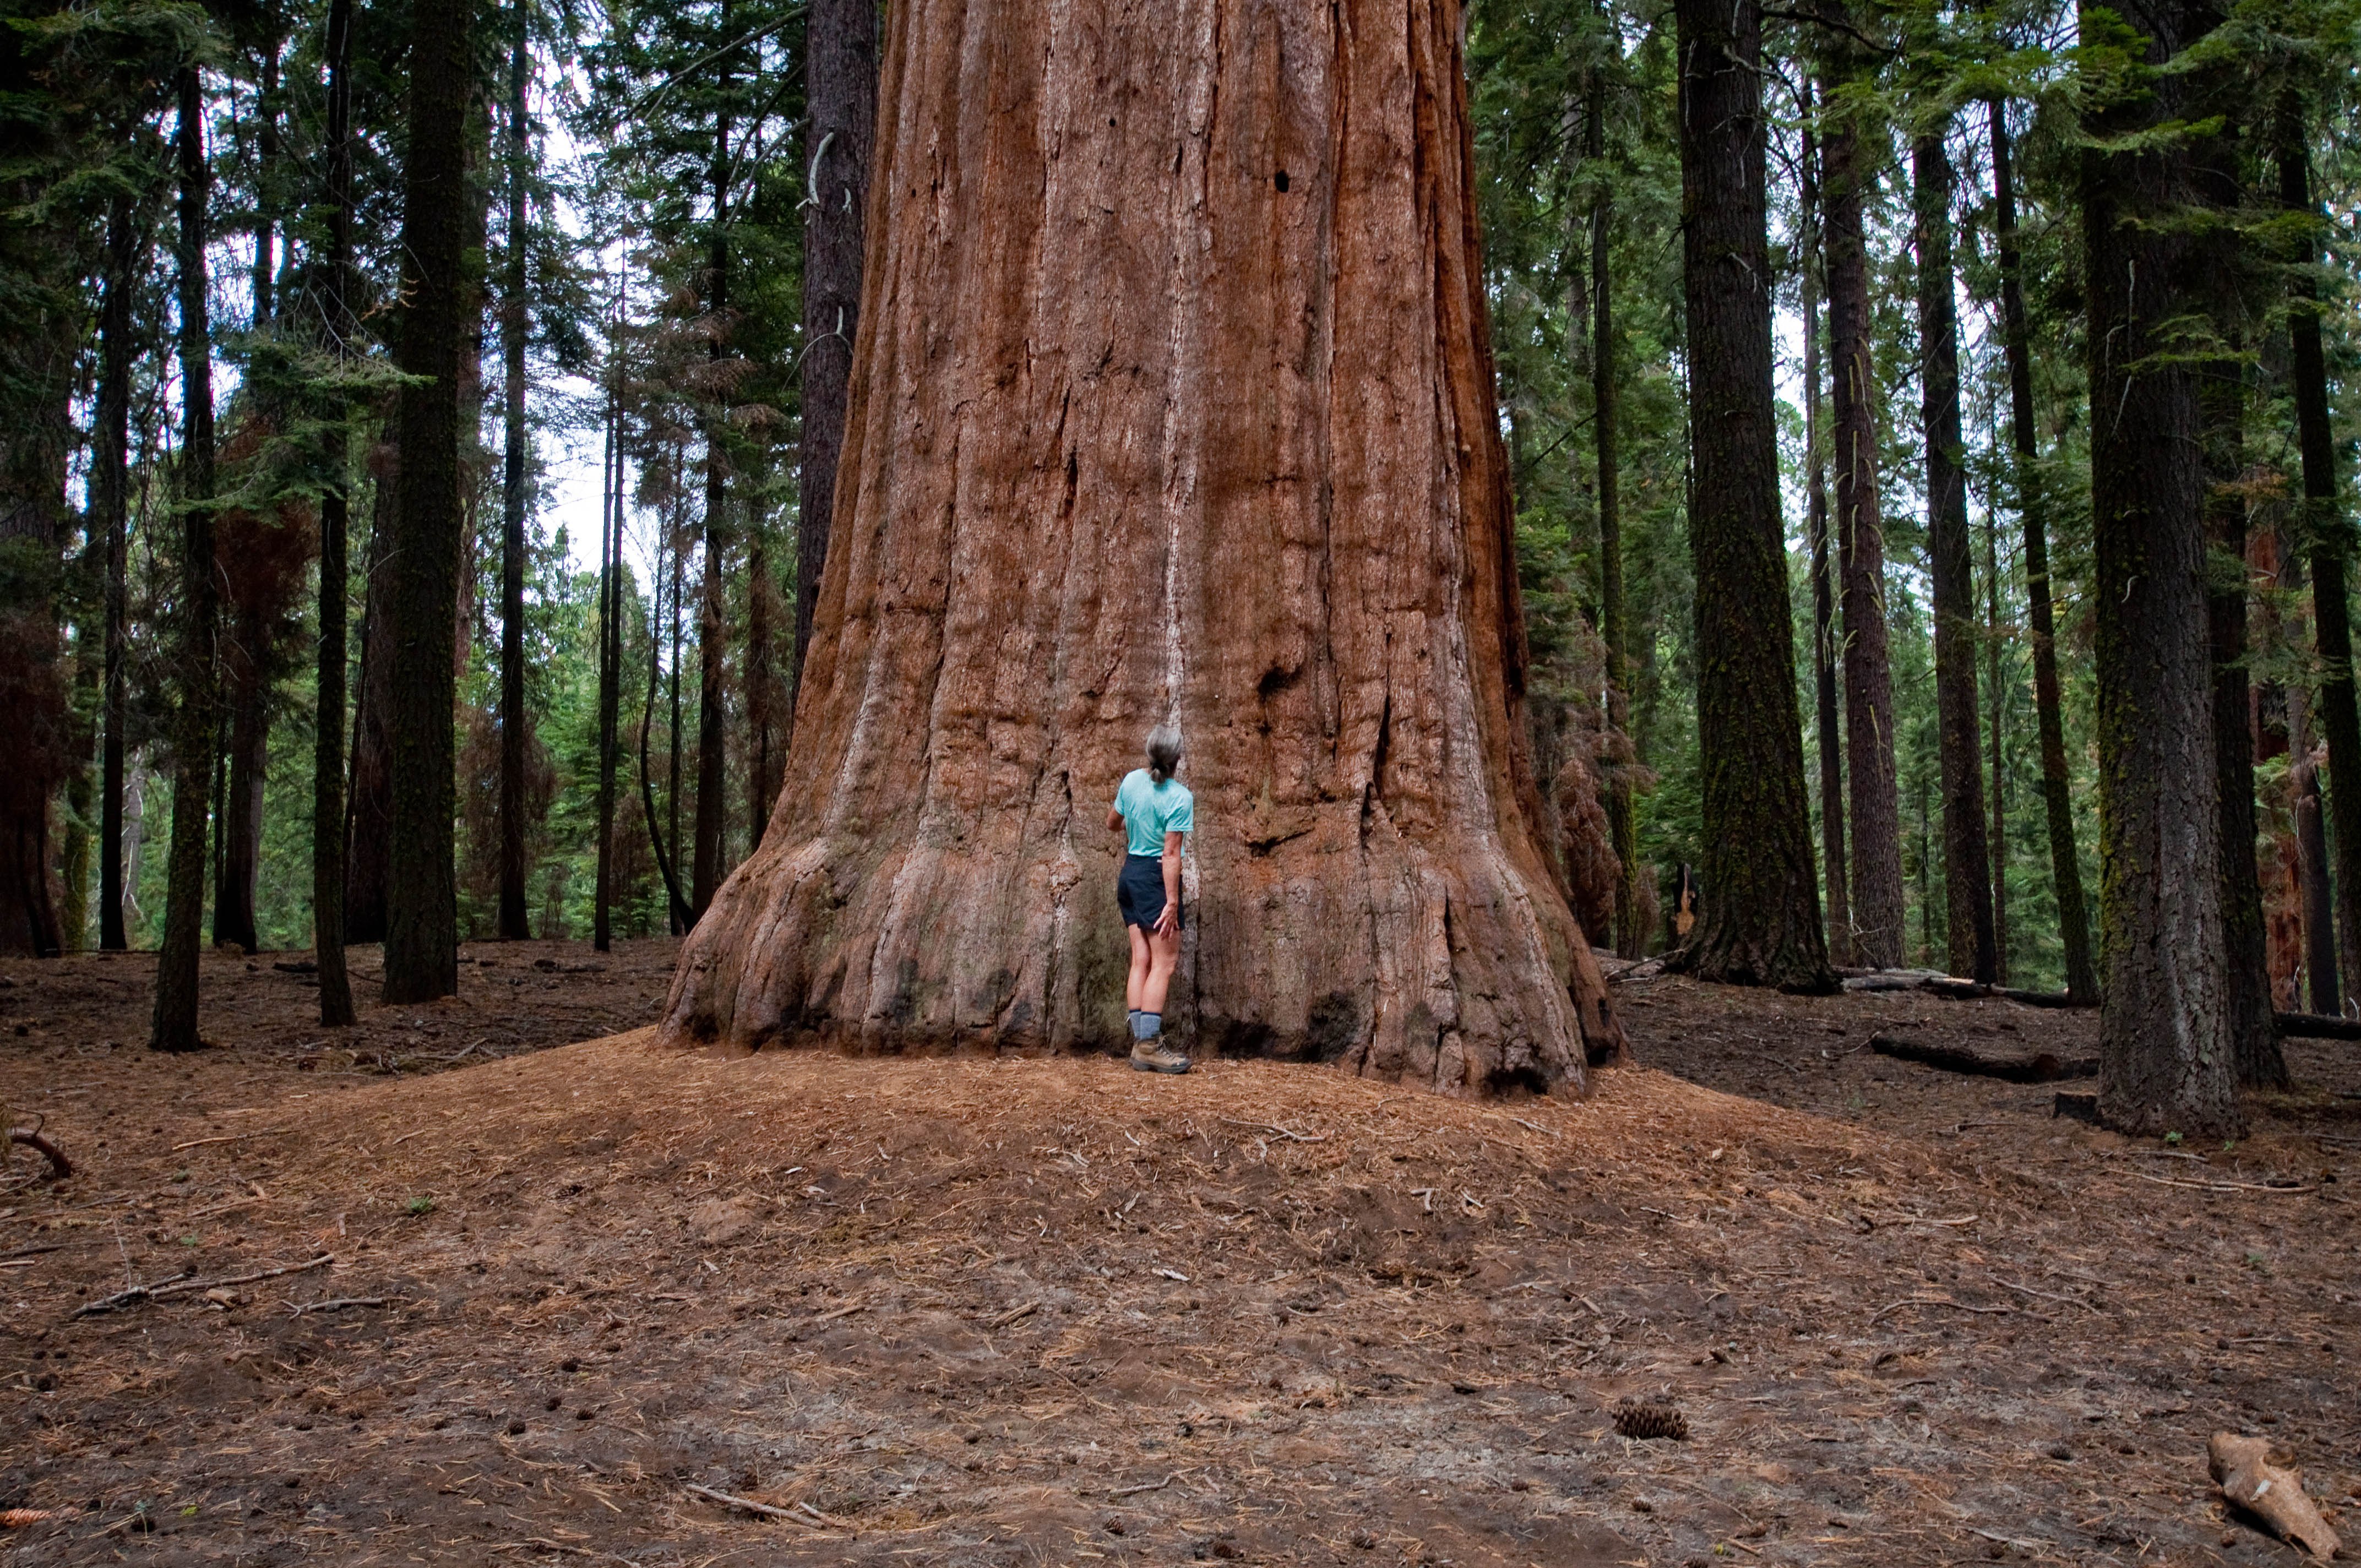 Высокое дерево в мире. Калифорнийская Секвойя Гиперион. Дерево Гиперион Редвуд. Секвойя дерево Гиперион. Секвойи парк Редвуд.